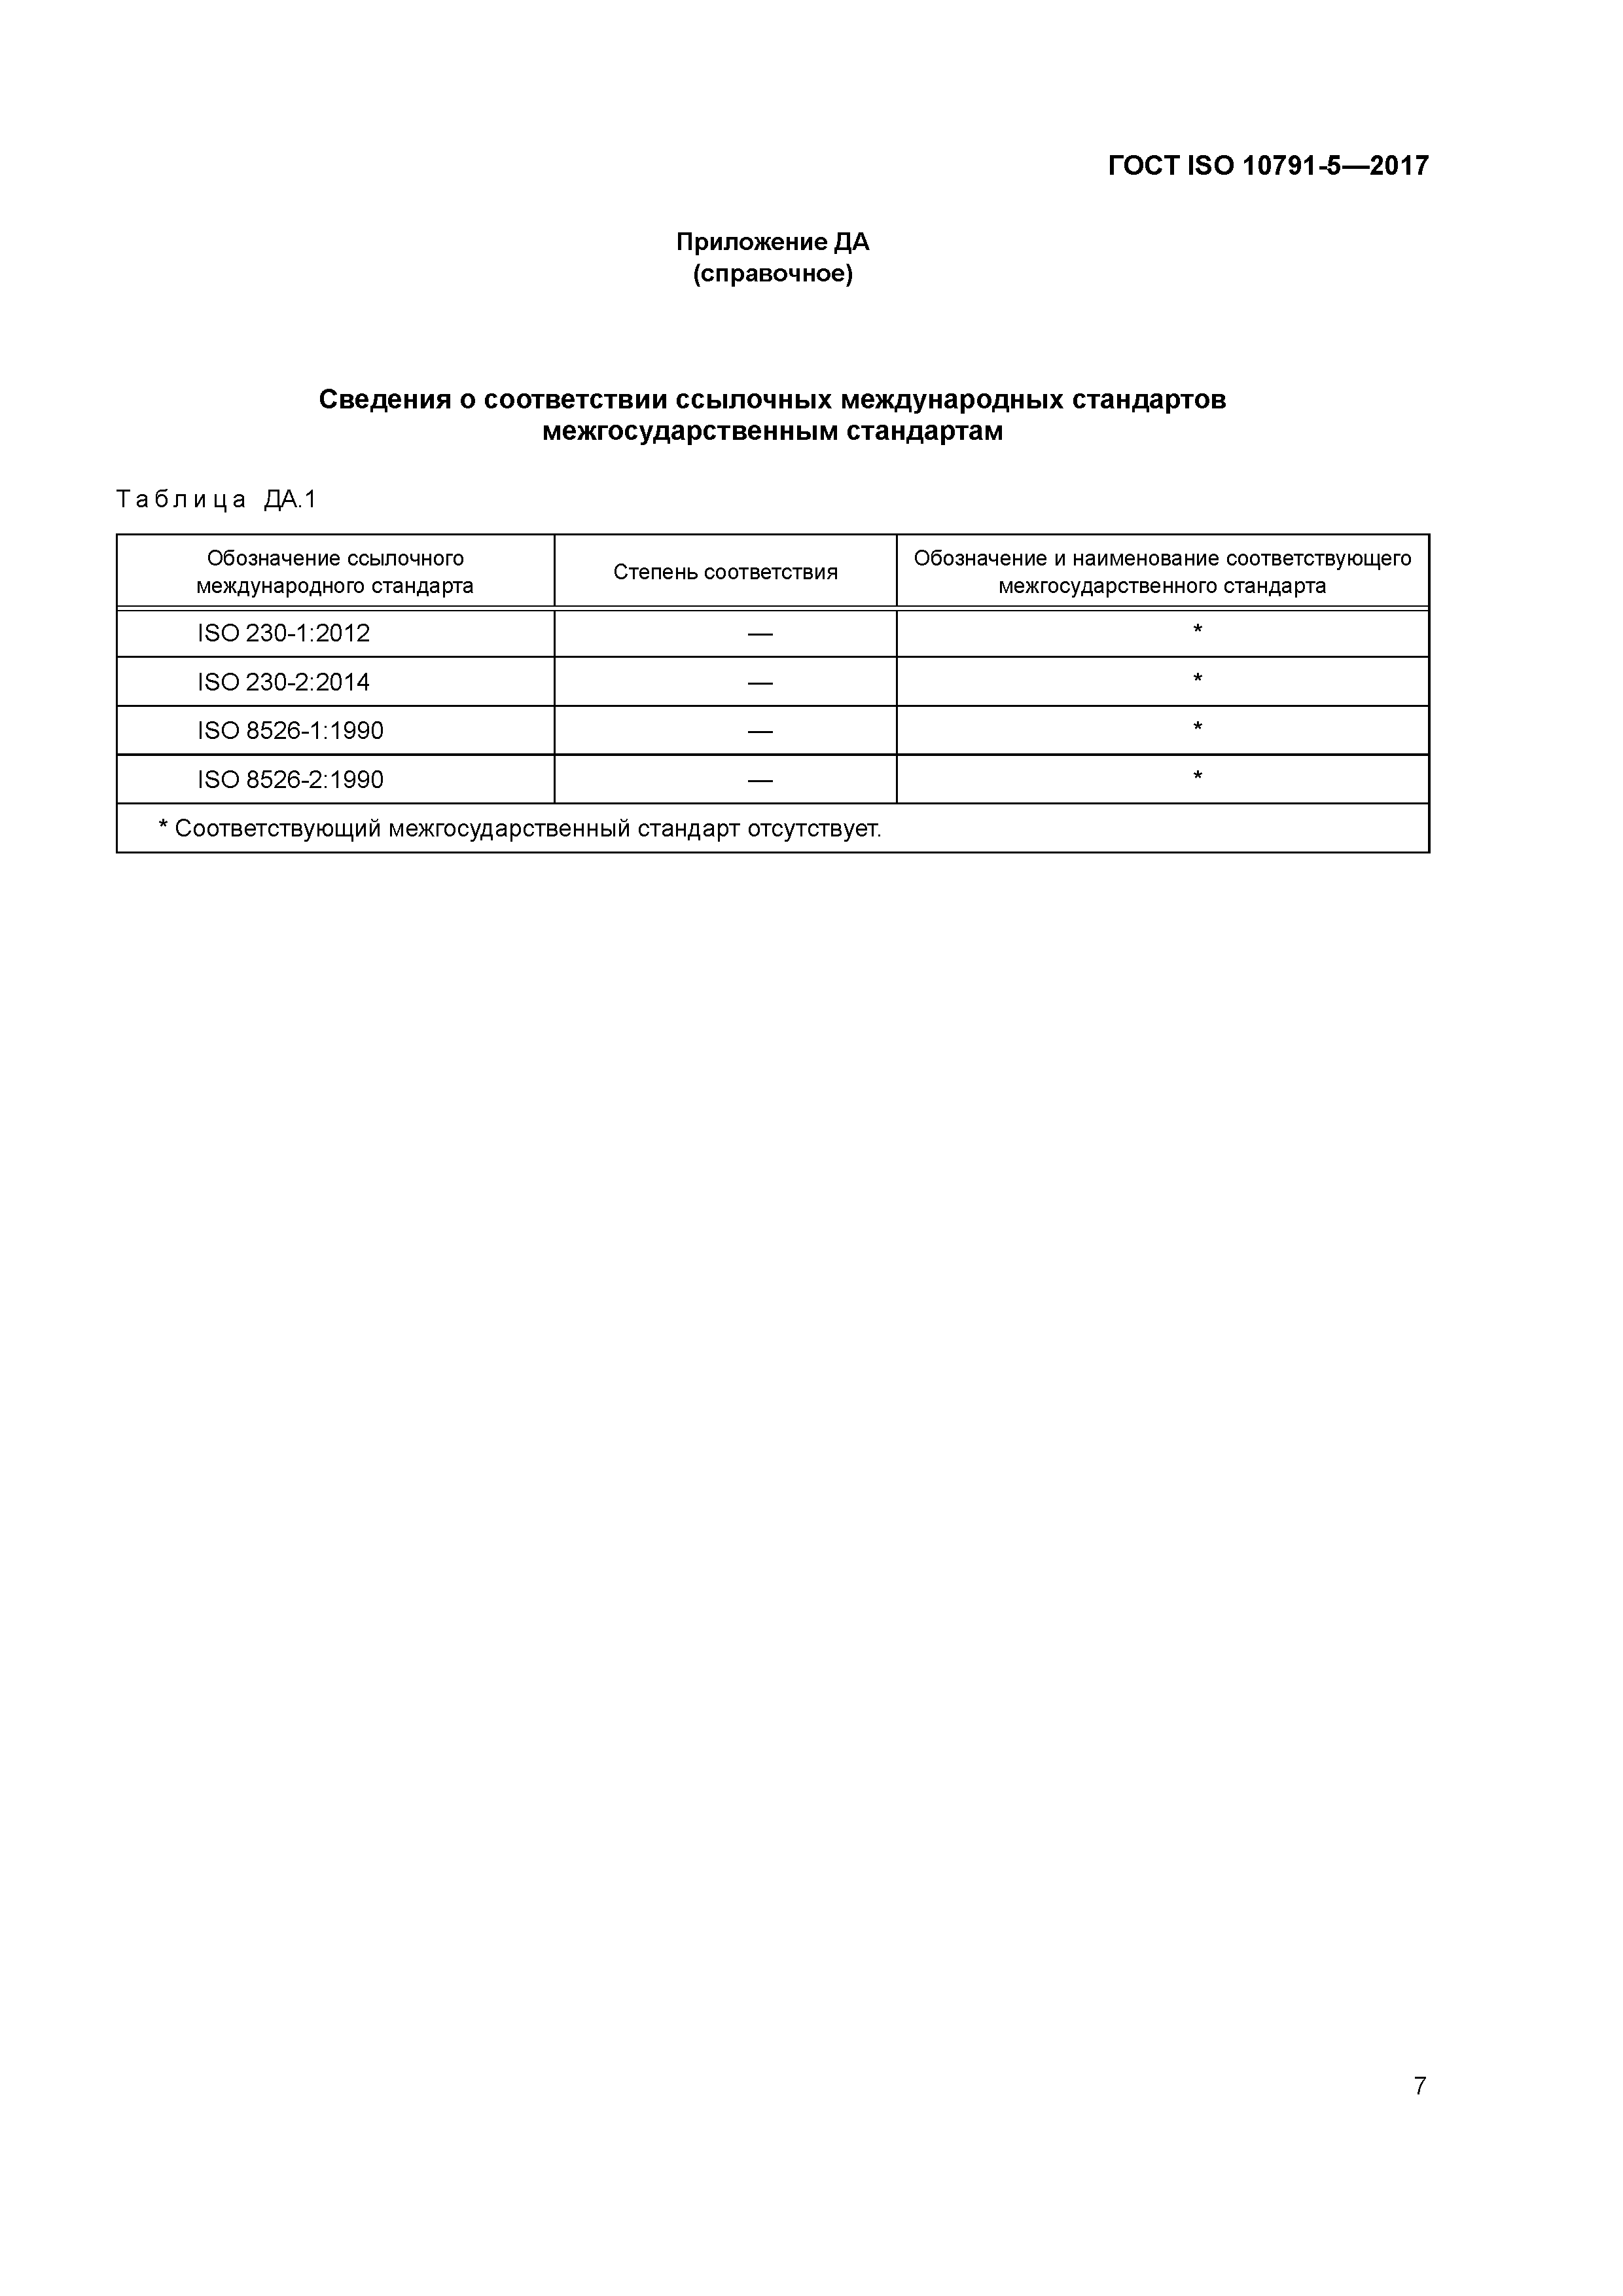 ГОСТ ISO 10791-5-2017